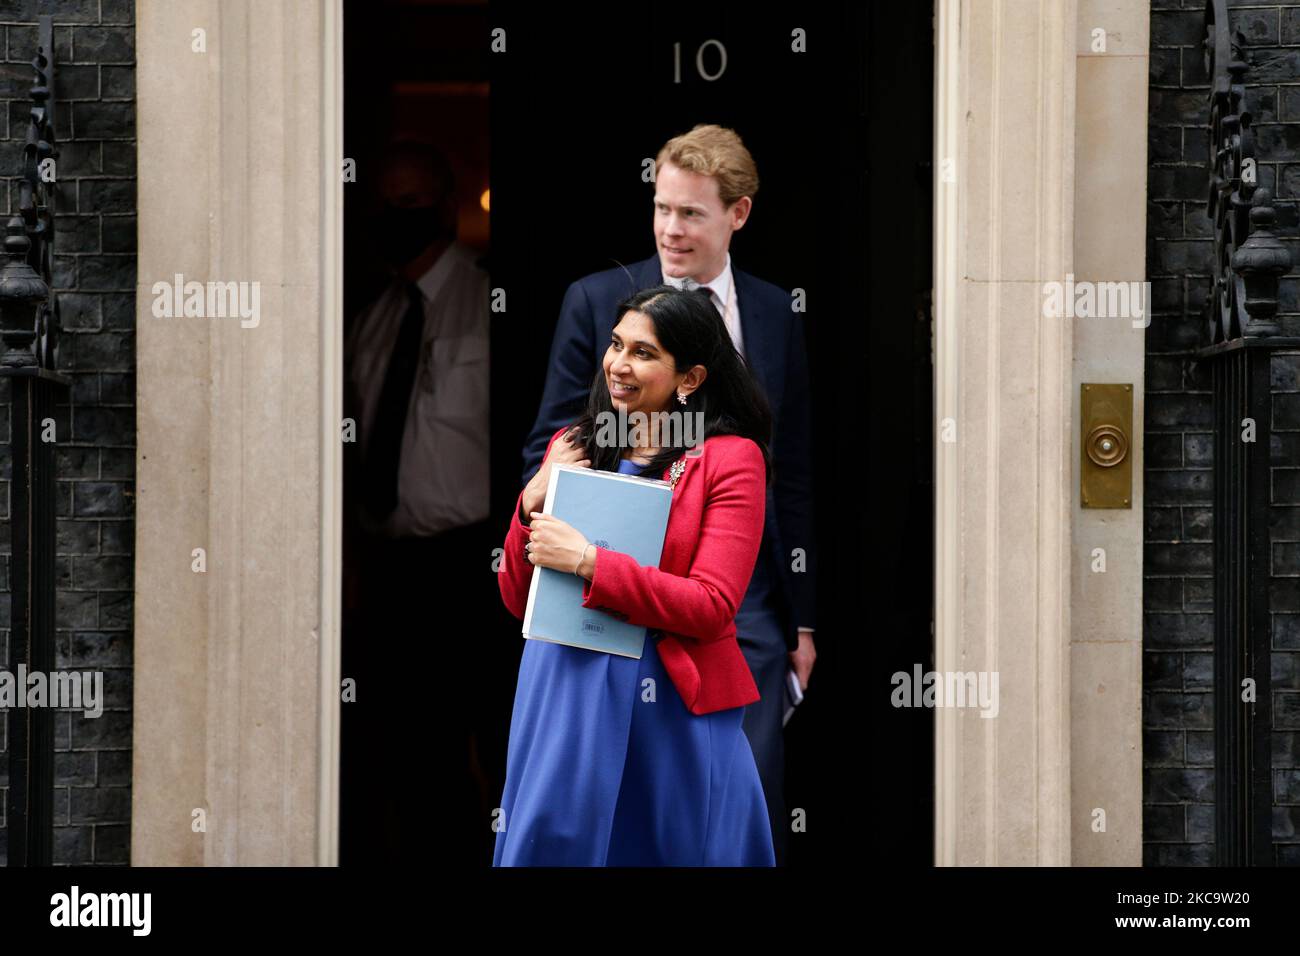 Le procureur général Suella Braverman, députée du Parti conservateur pour Fareham, quitte le 10 Downing Street à Londres, en Angleterre, sur 23 février 2021. (Photo de David Cliff/NurPhoto) Banque D'Images